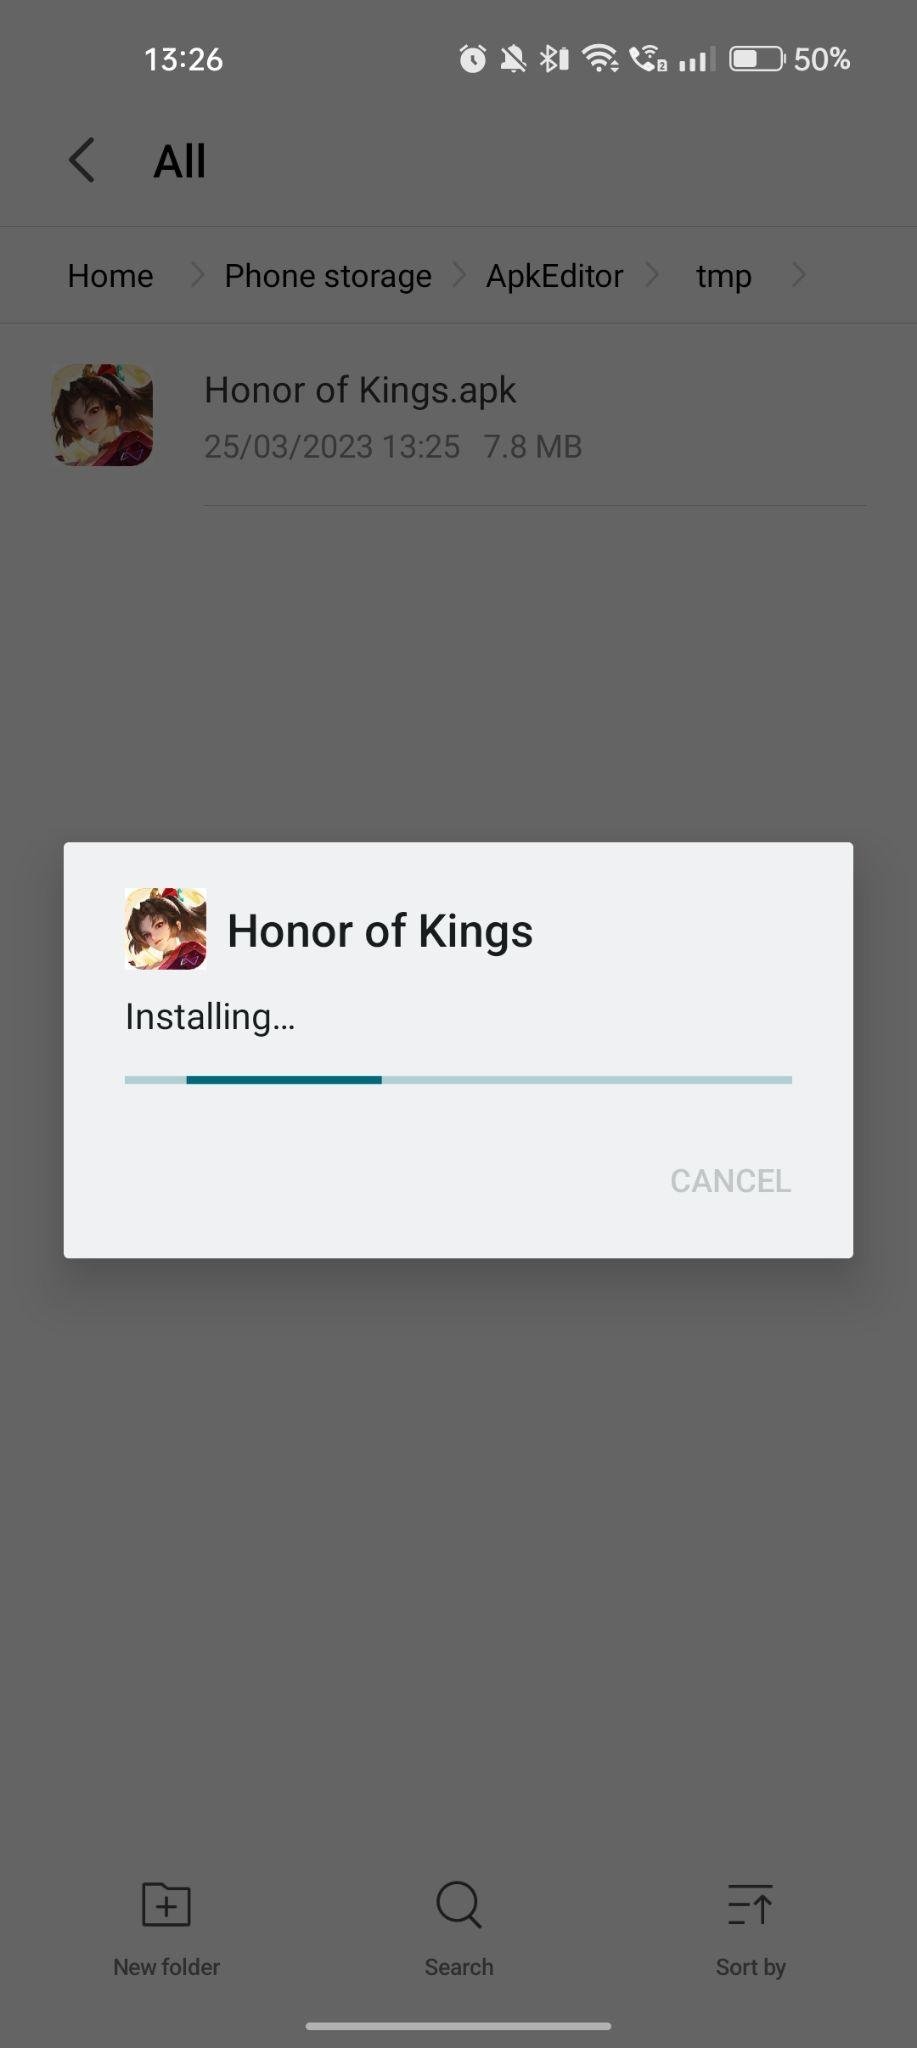 Honor of Kings apk installing